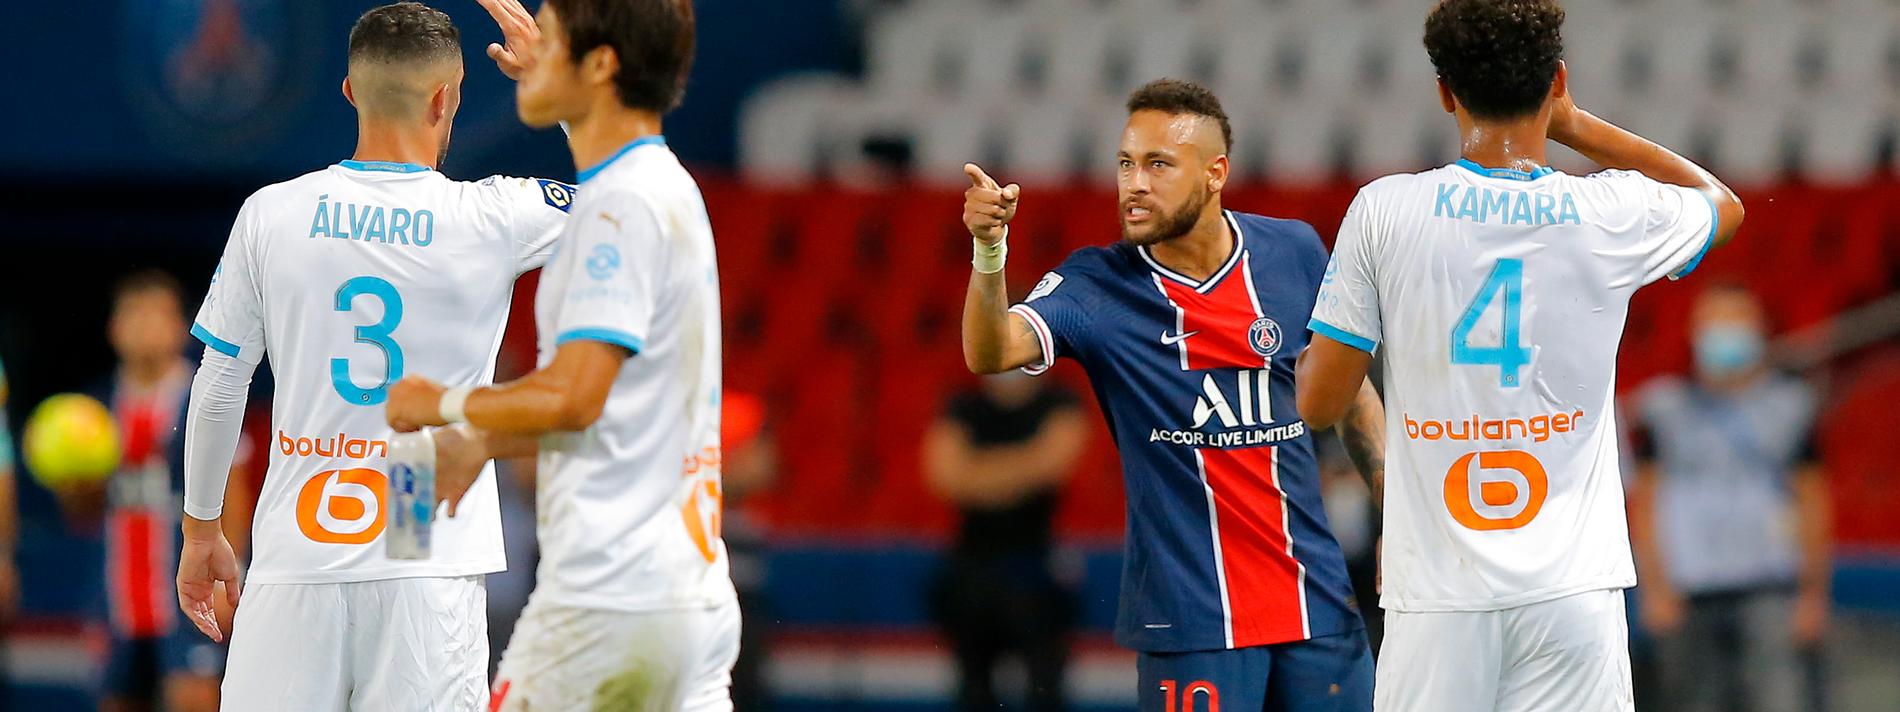 Neymar utreds för att ha uttryckt sig rasistiskt under matchen mellan PSG och Marseille.